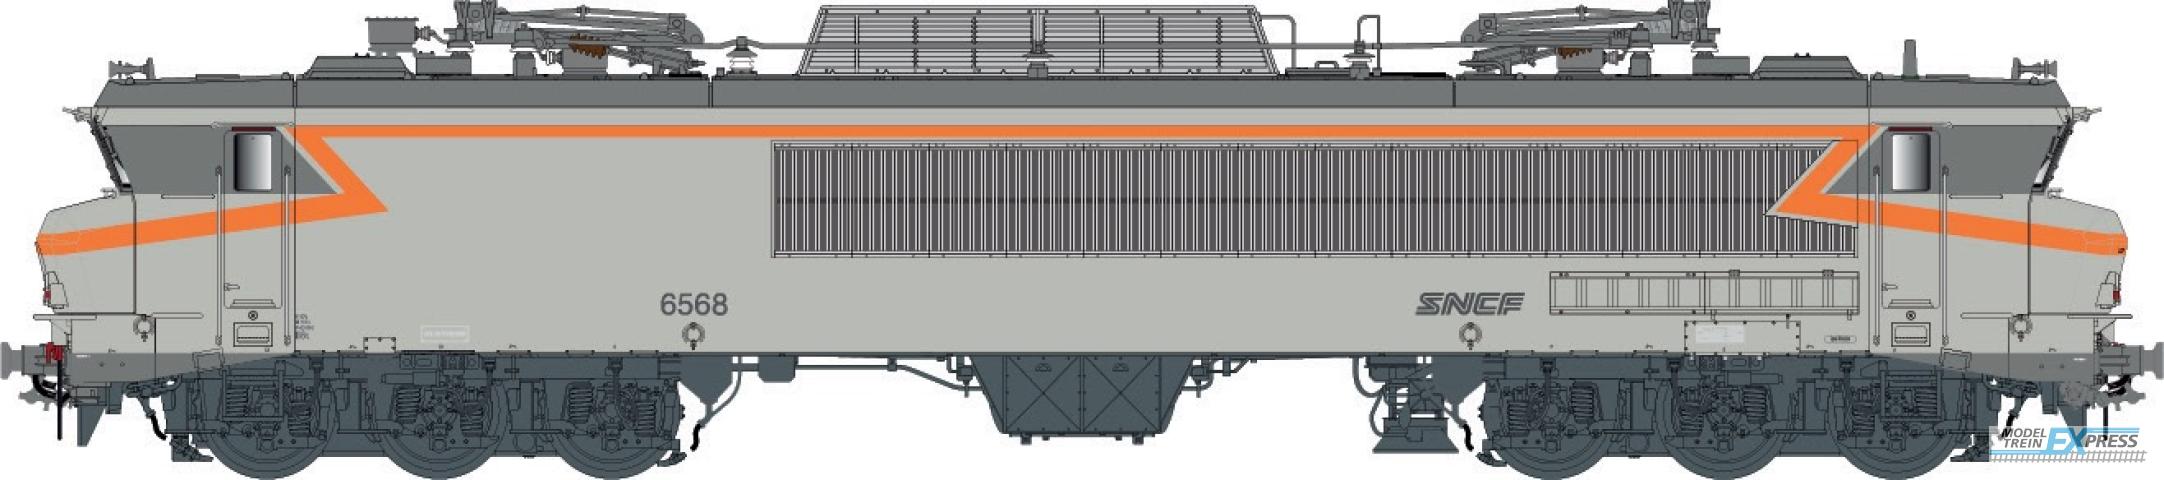 LS Models 10333S CC 6558, concrete gray, orange, noodle logo, Lyon-Mouche depot  /  Ep. IV-V  /  SNCF  /  HO  /  DC SOUND  /  1 P.